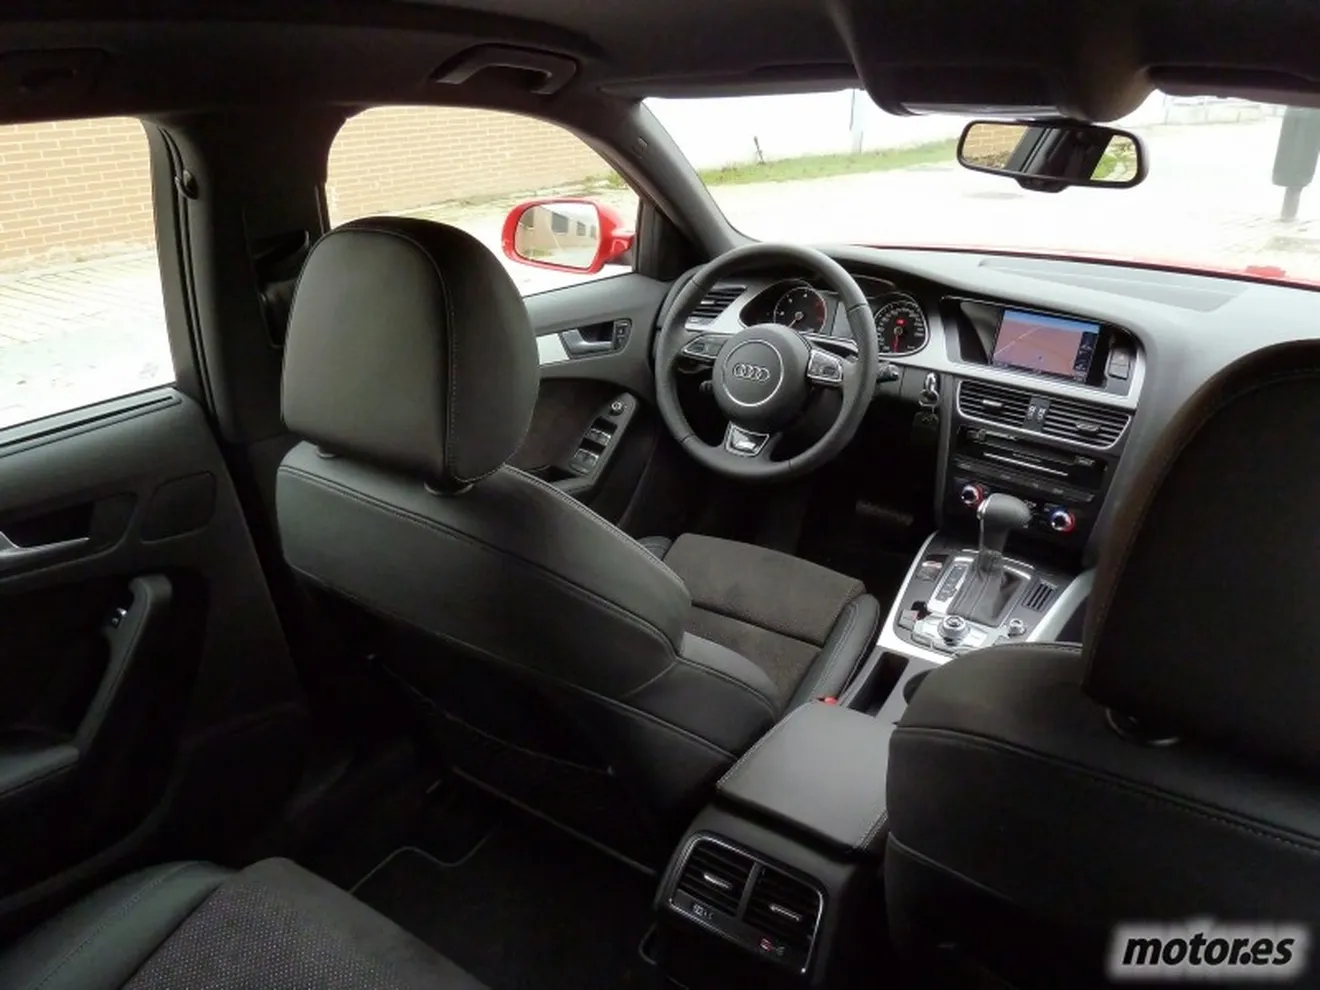 Audi A4 Avant interior